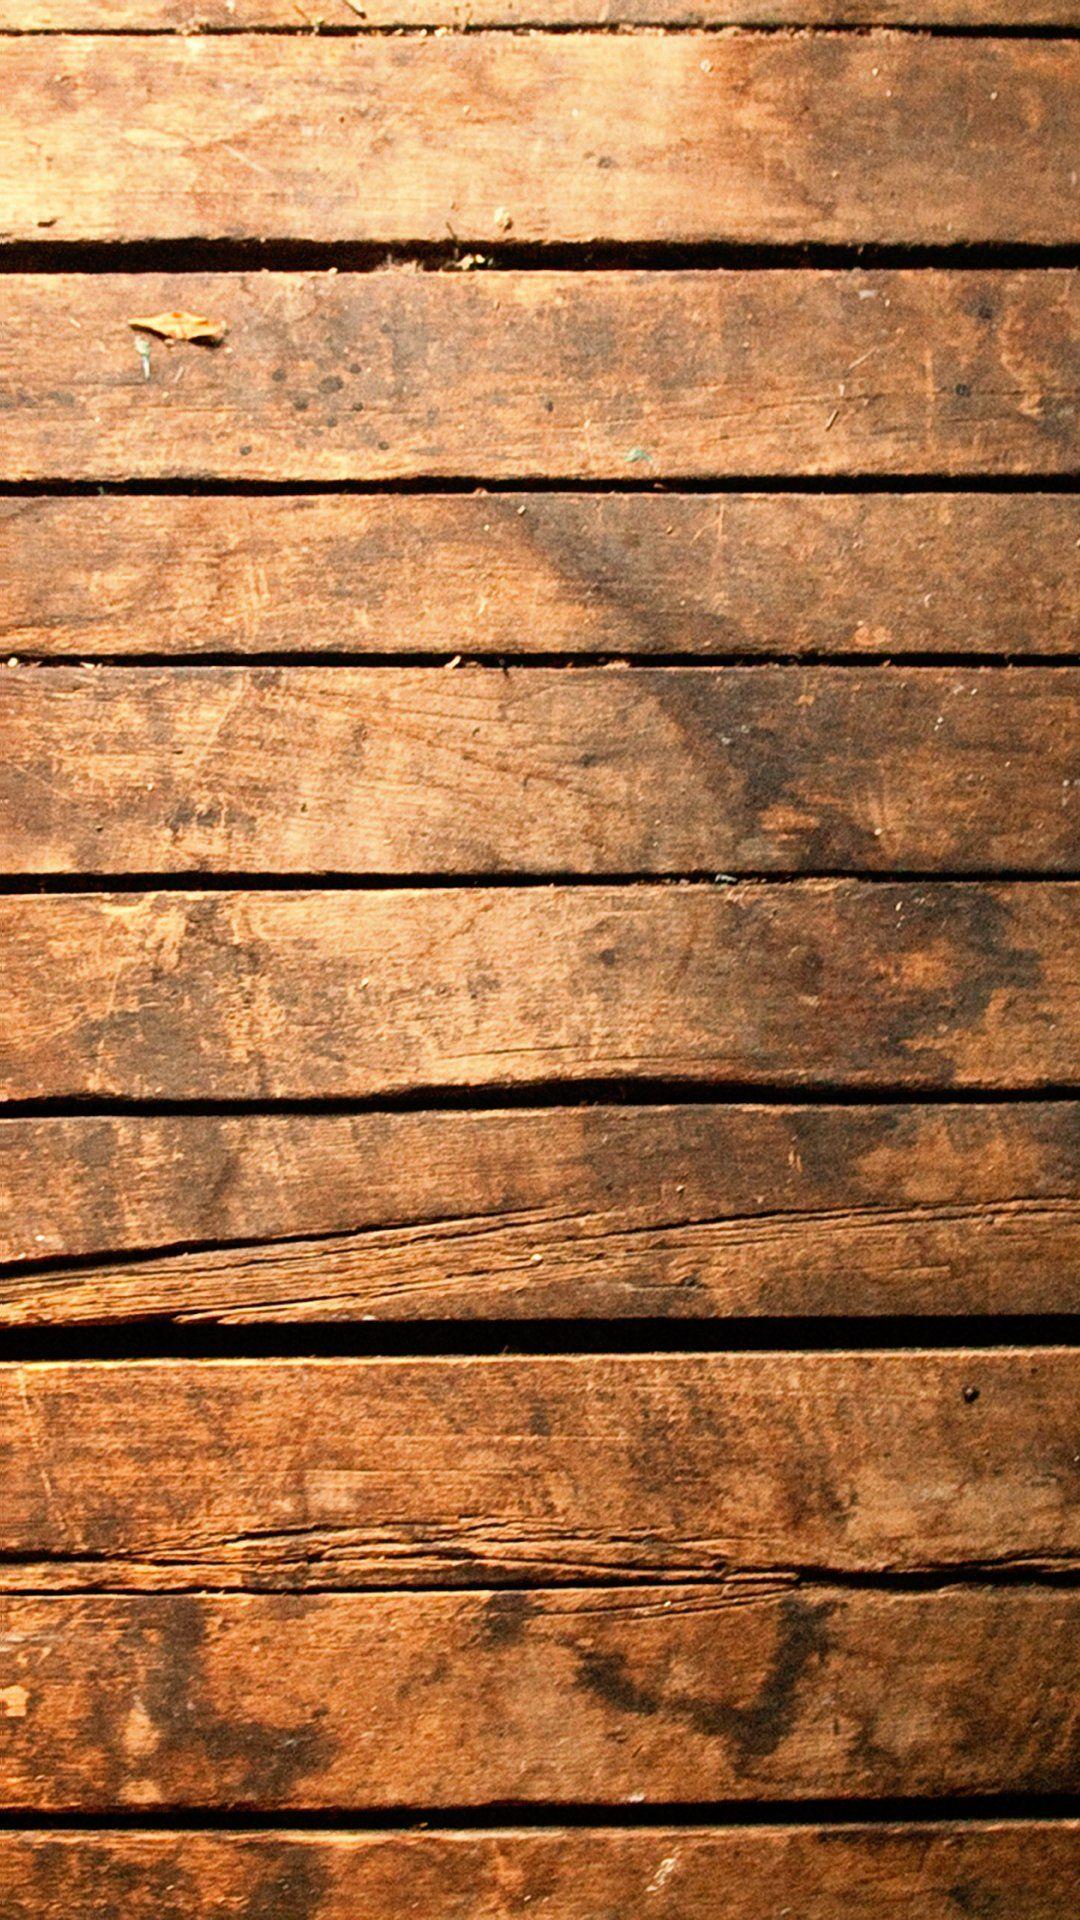 Hình nền đồ gỗ: Bạn yêu thích đồ gỗ và muốn tìm kiếm hình nền điện thoại thể hiện niềm đam mê của bạn? Nhấn vào hình ảnh liên quan đến hình nền đồ gỗ và khám phá những mẫu hình nền độc đáo và tinh tế nhất.